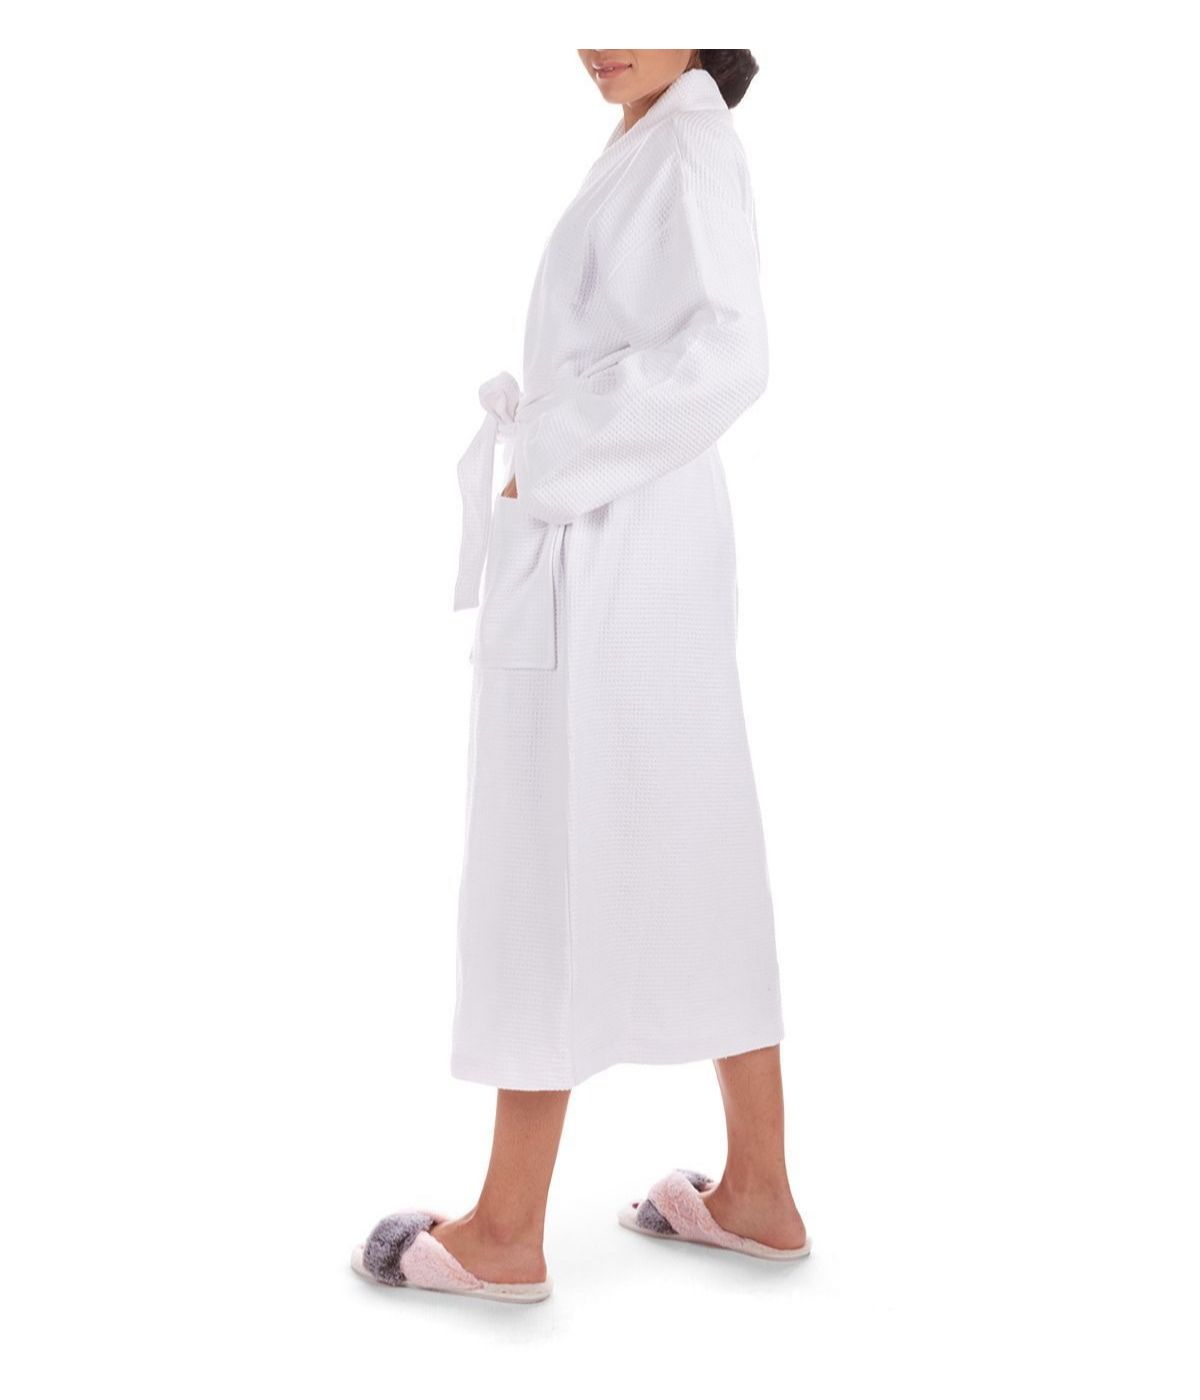 Women's 100% Cotton Woven Waffle Spa-Style Kimono Robe White